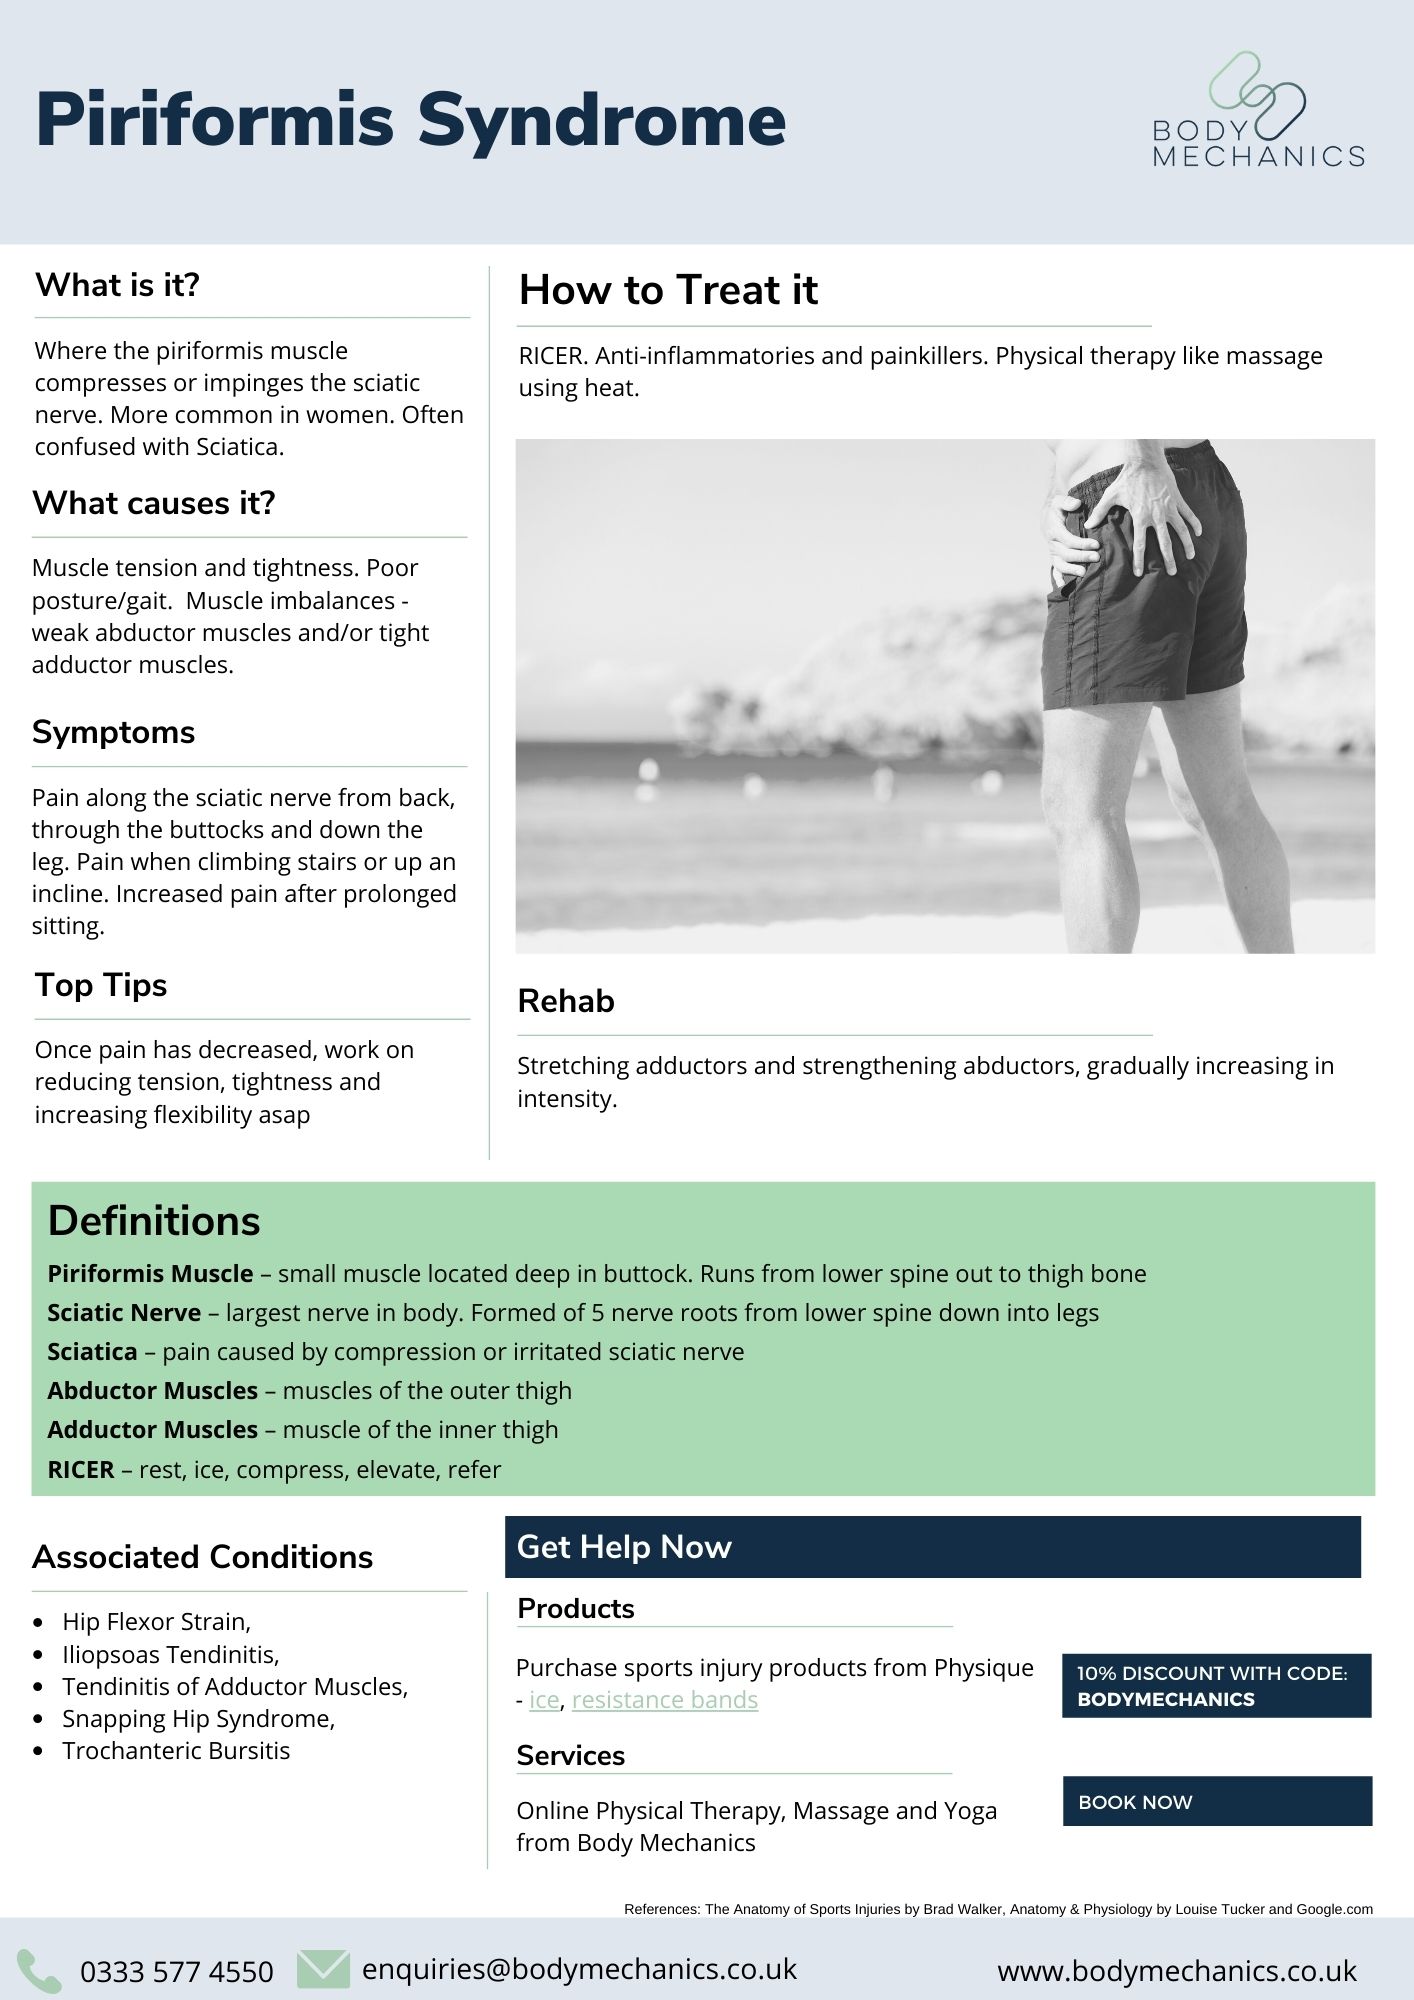 Piriformis Syndrome Infosheet